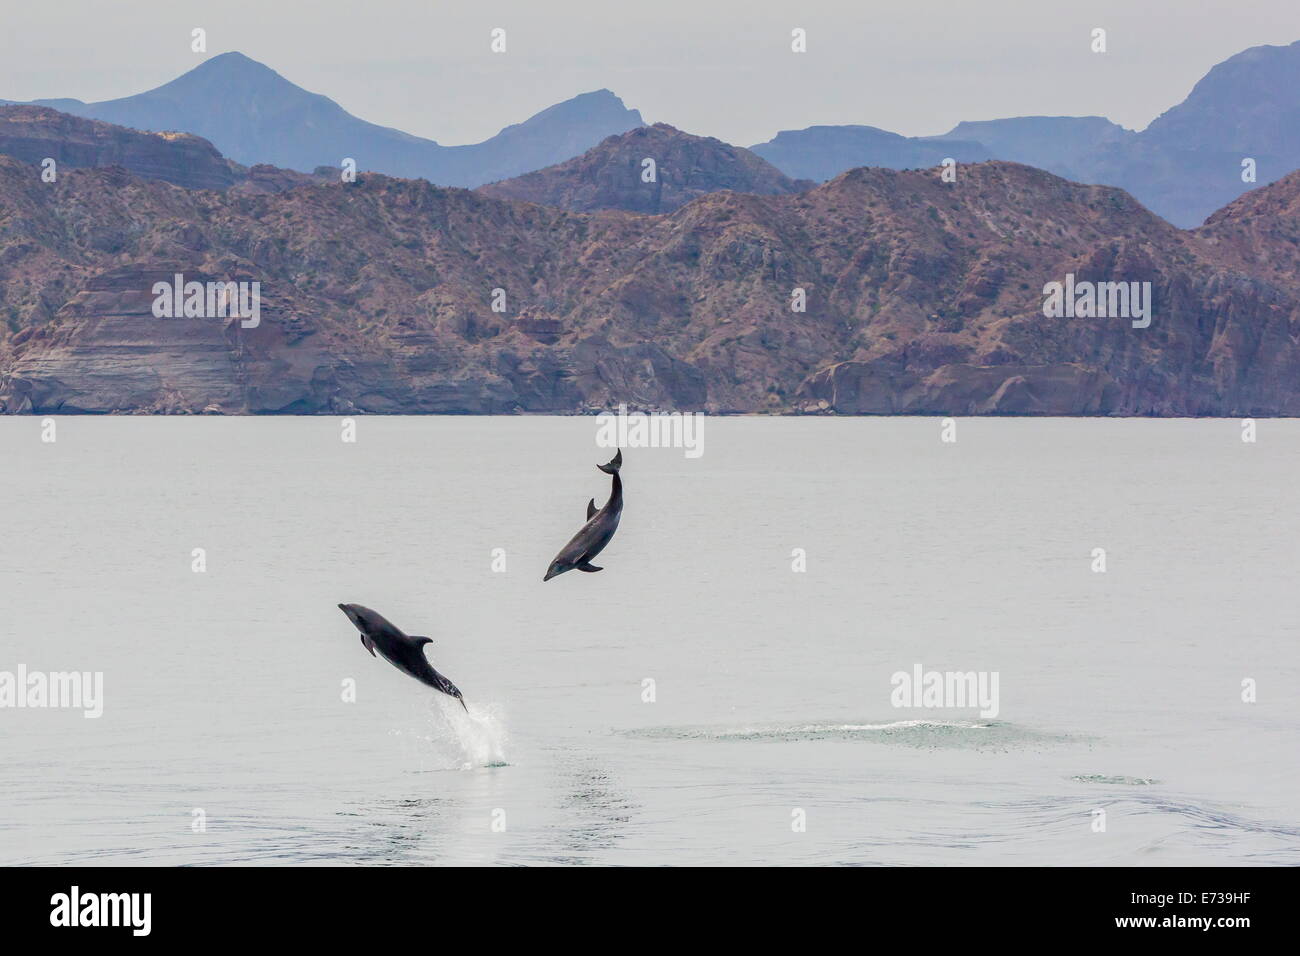 Adulto delfines nariz de botella (Tursiops truncatus) saltando en las aguas cercanas a la Isla de Danzantes, Baja California Sur, México Foto de stock